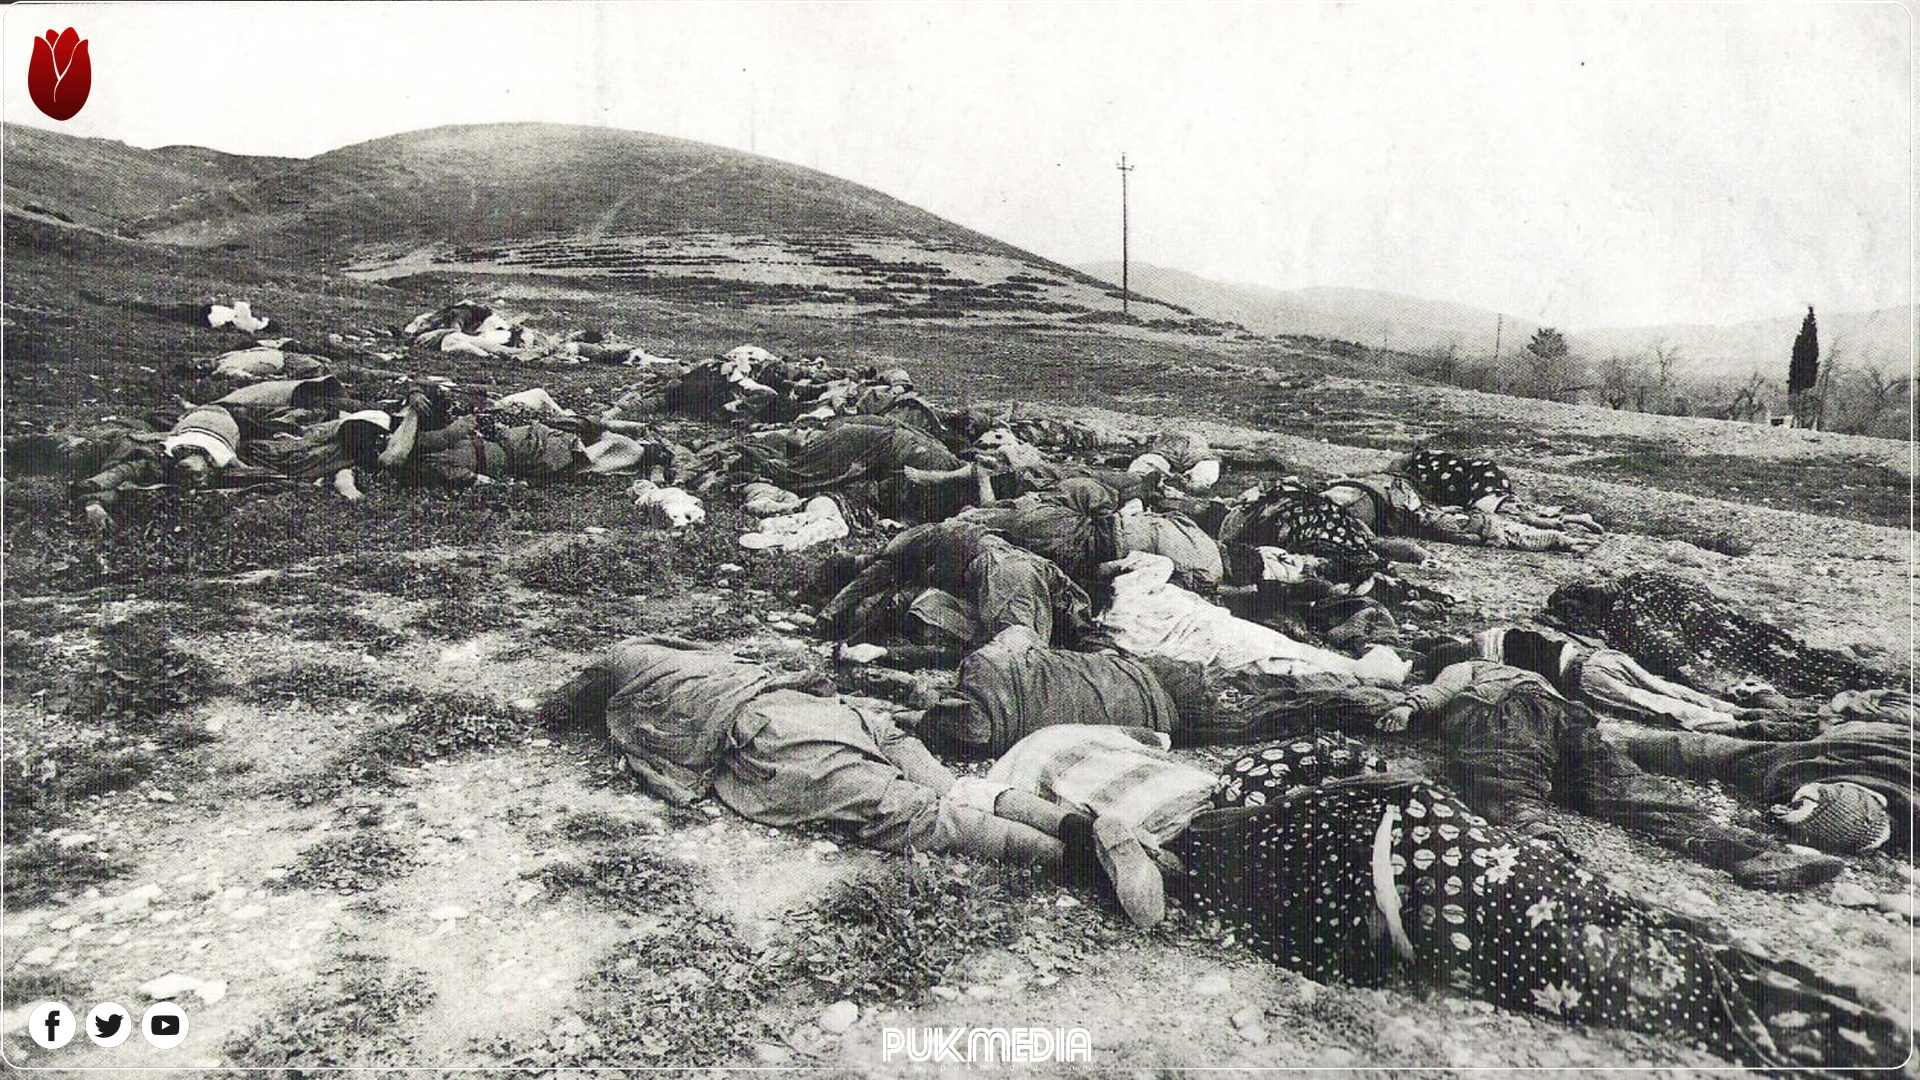 صورة لضحايا الاسلحة الكيمياوية في مدينة حلبجة 